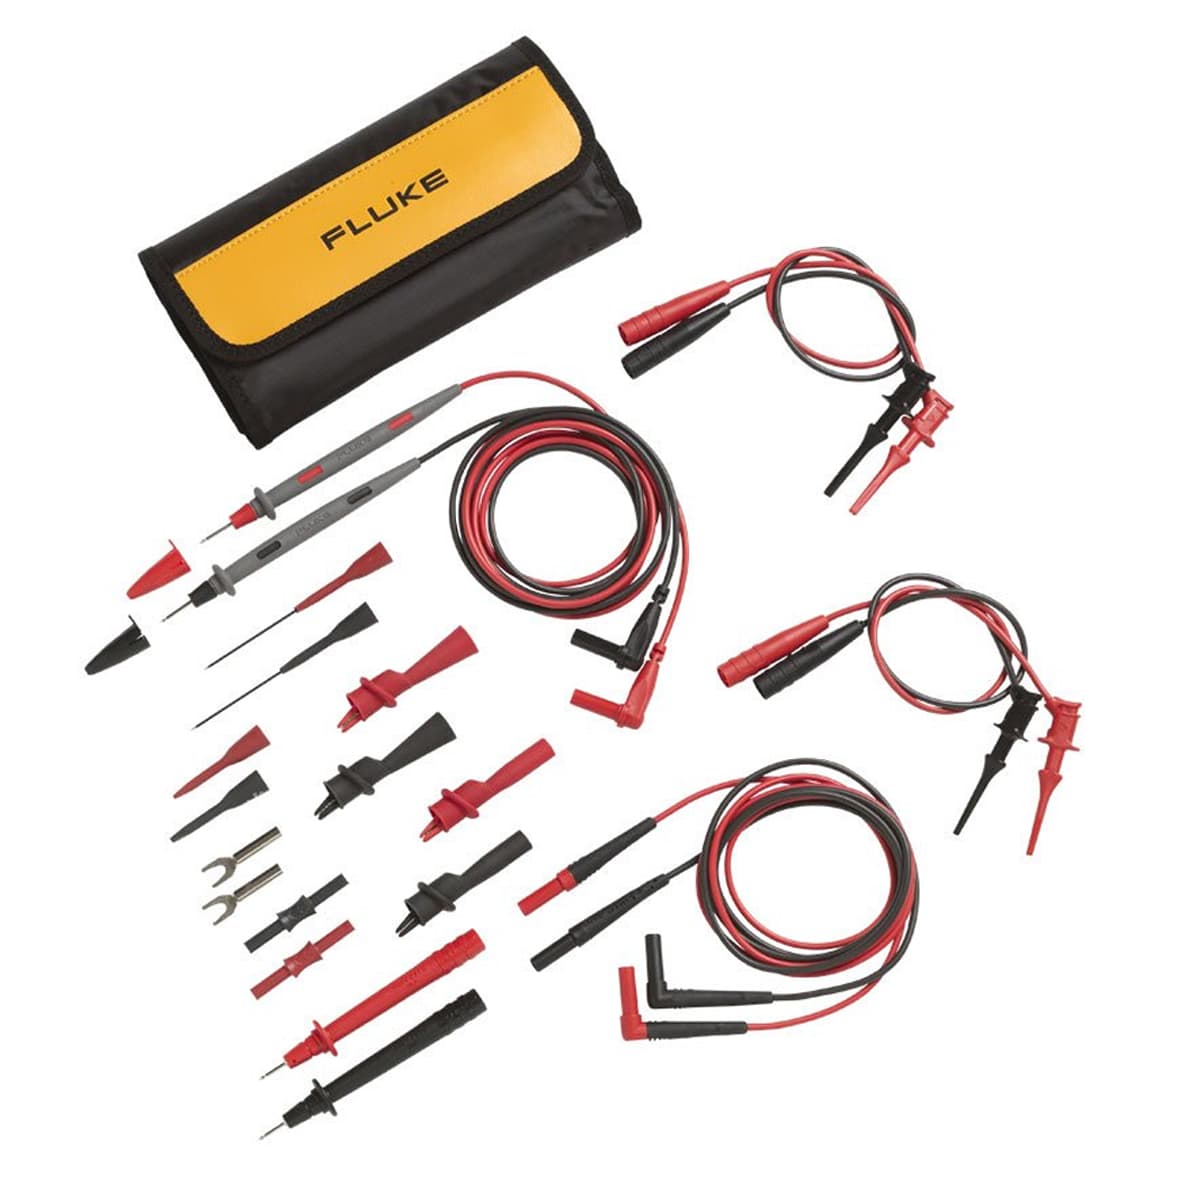 imagen principal de producto Juego de cables de prueba Deluxe para aplicaciones electrónicas TL81A